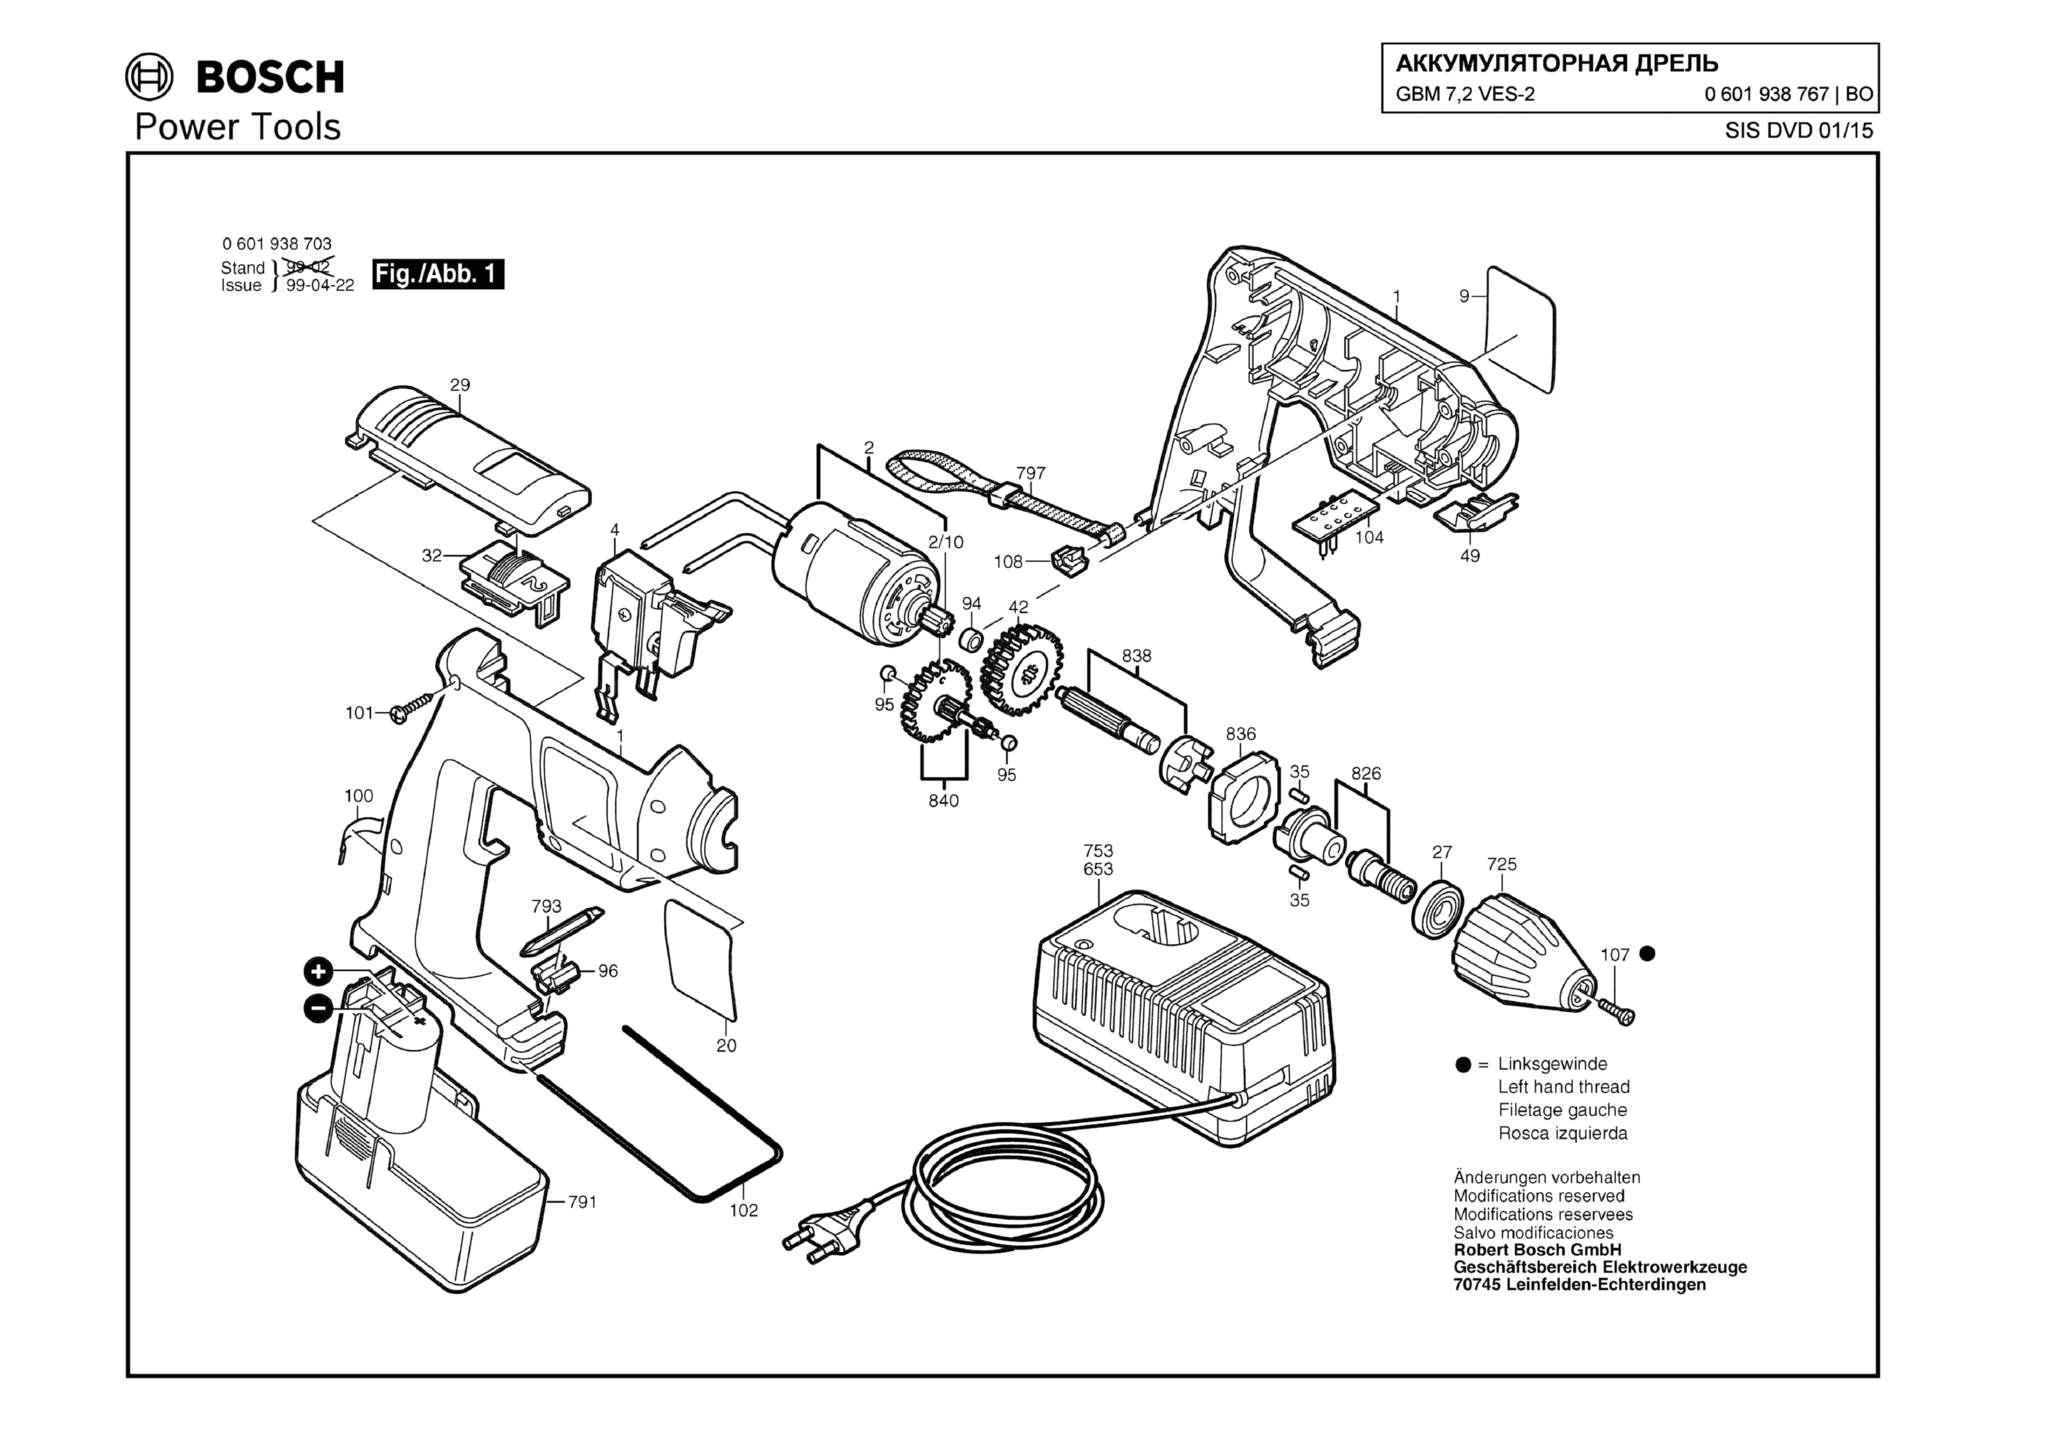 Запчасти, схема и деталировка Bosch GBM 7,2 VES-2 (ТИП 0601938767)